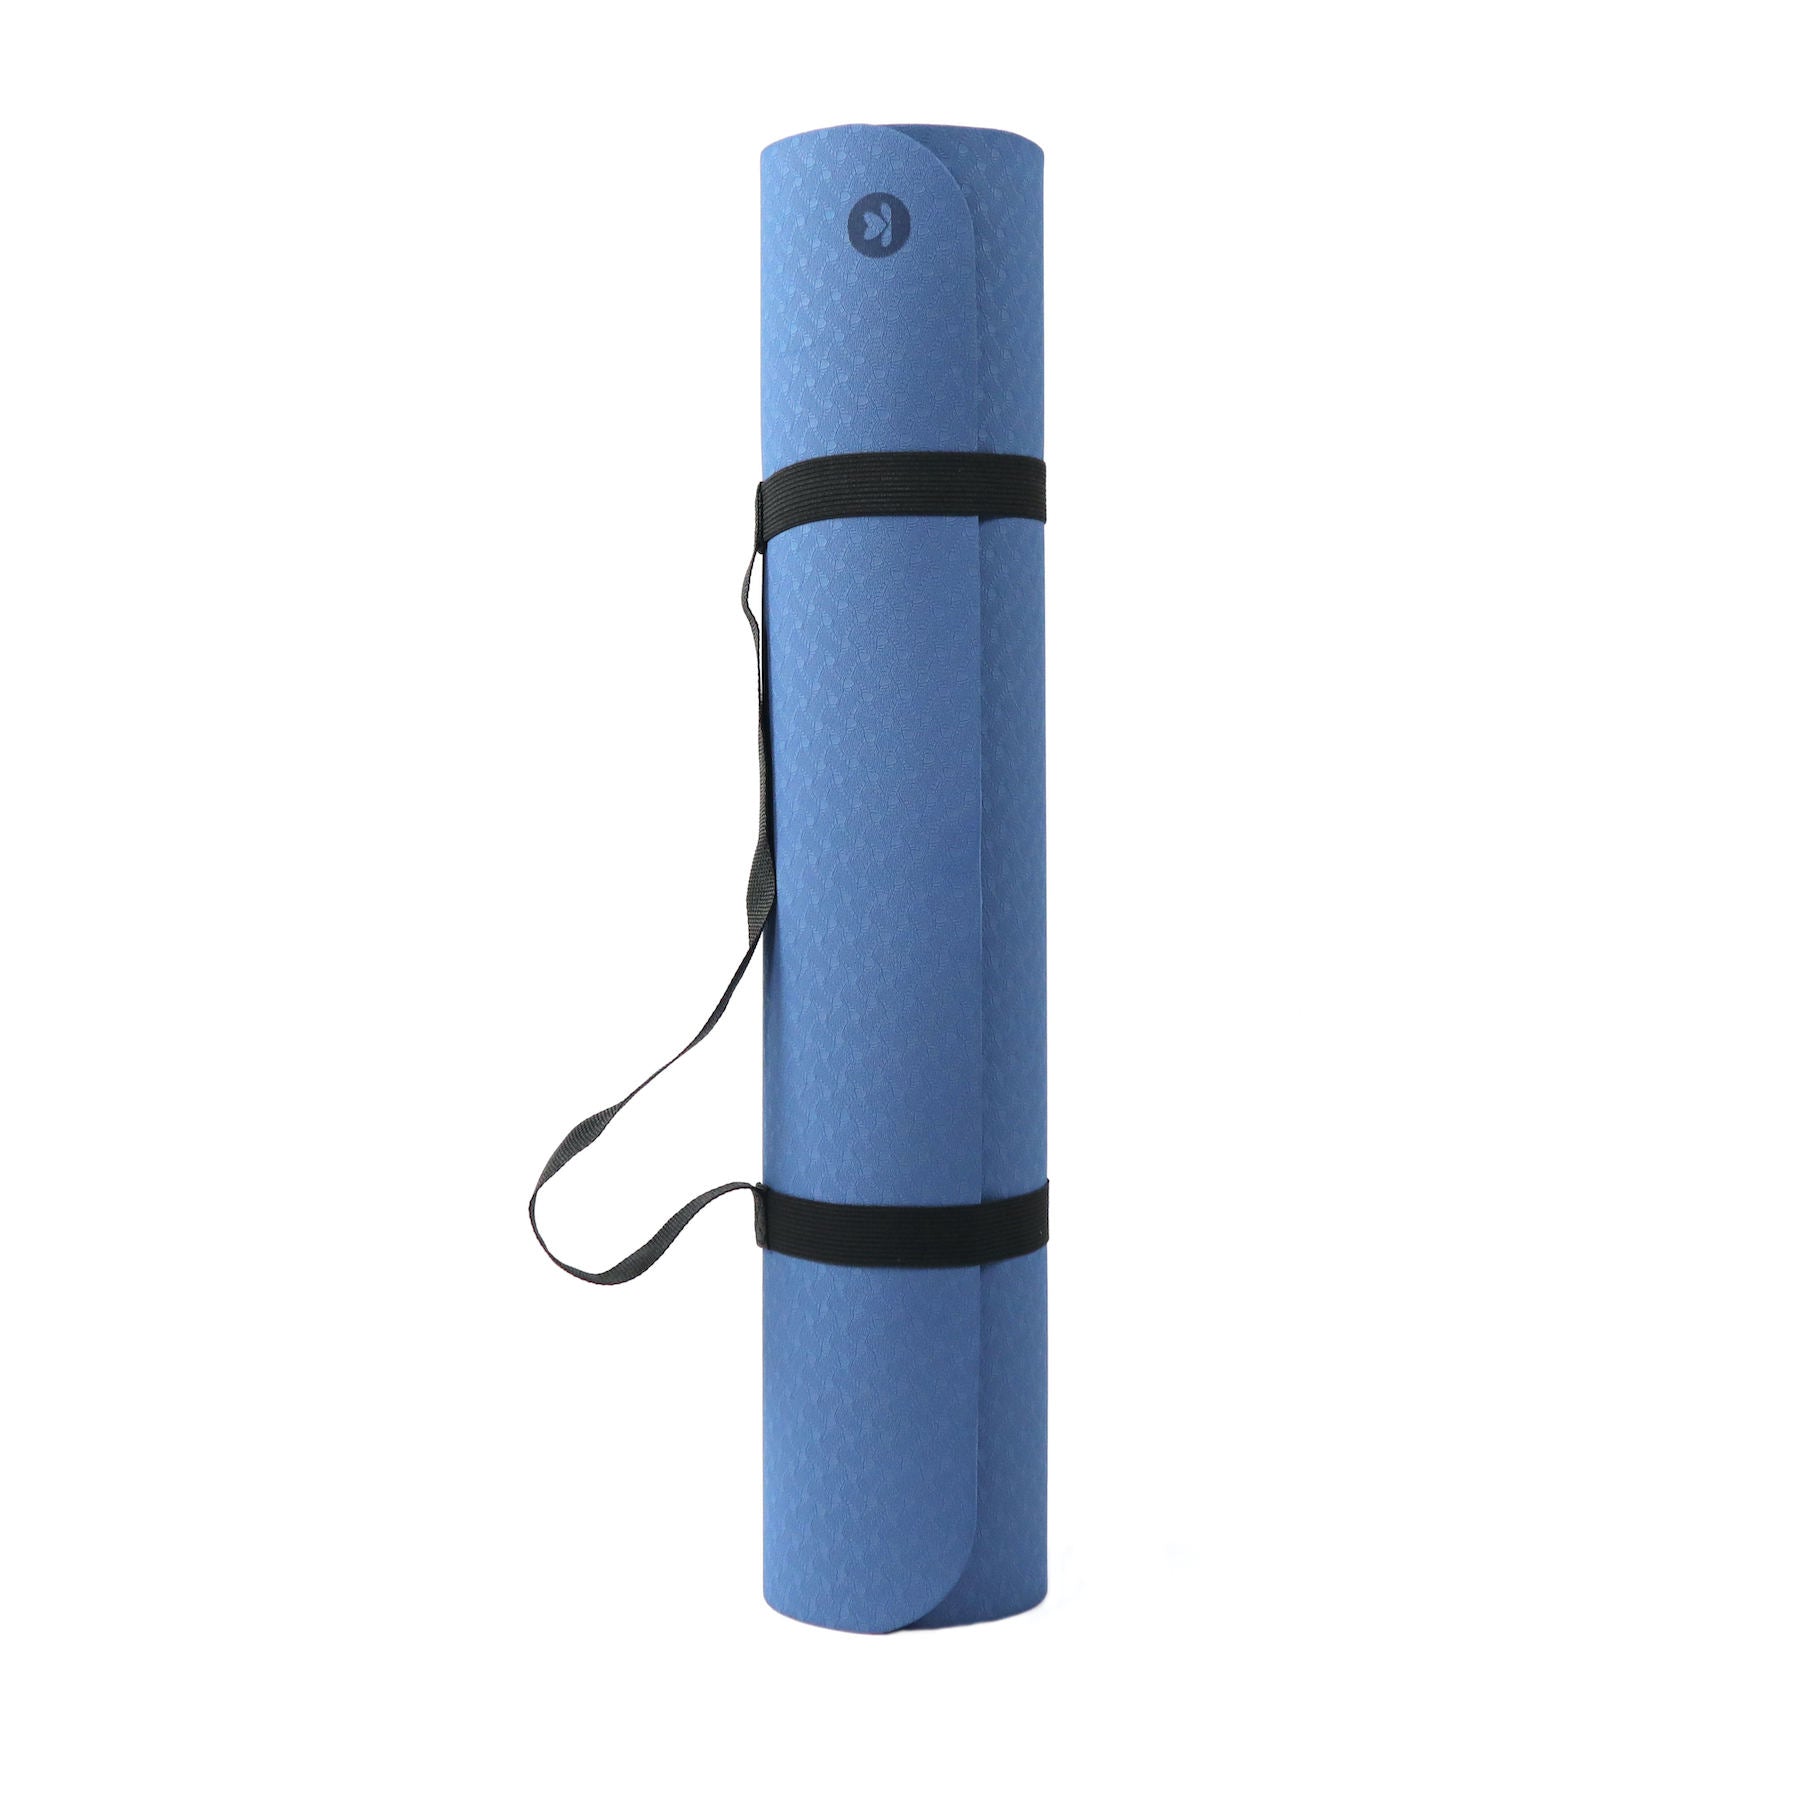 Tapis de yoga en TPE bleu marine, extra léger, sans PVC, écologique, épaisseur 6mm